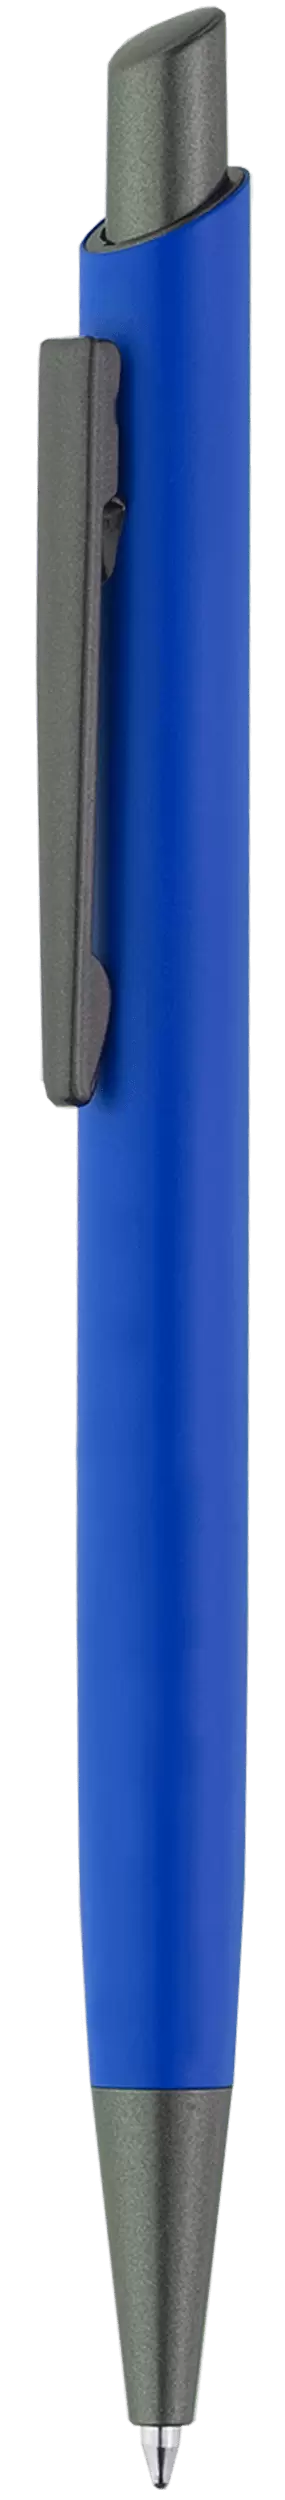 Ручка ELFARO TITAN Синяя 3052-01